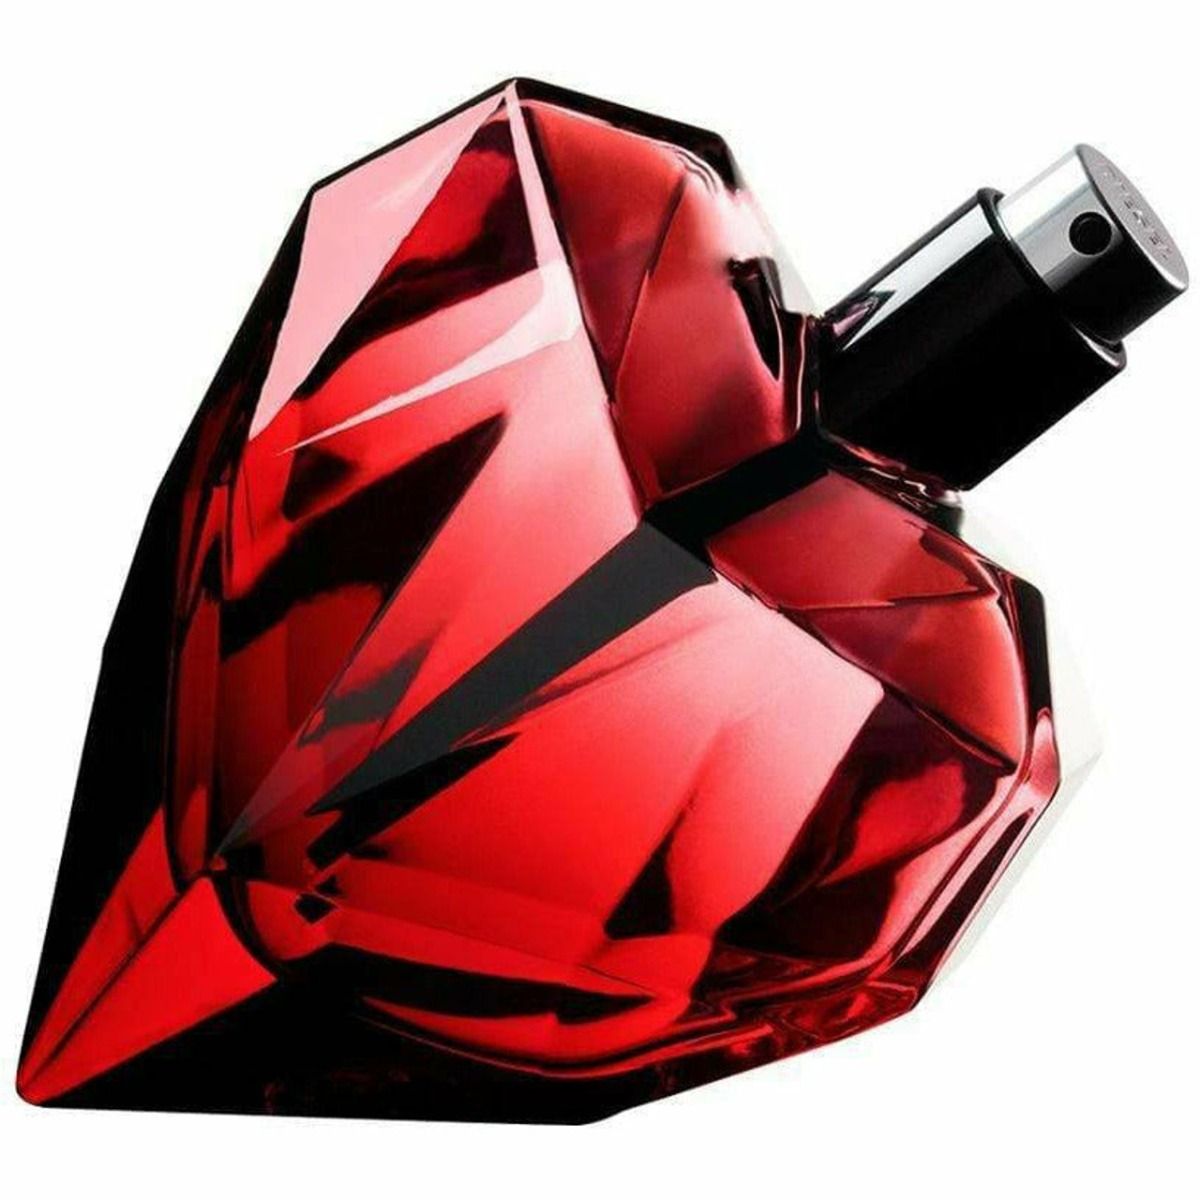 Diesel Loverdose Red Kiss парфюмерная вода для женщин, 50 ml diesel парфюмерная вода loverdose 50 мл